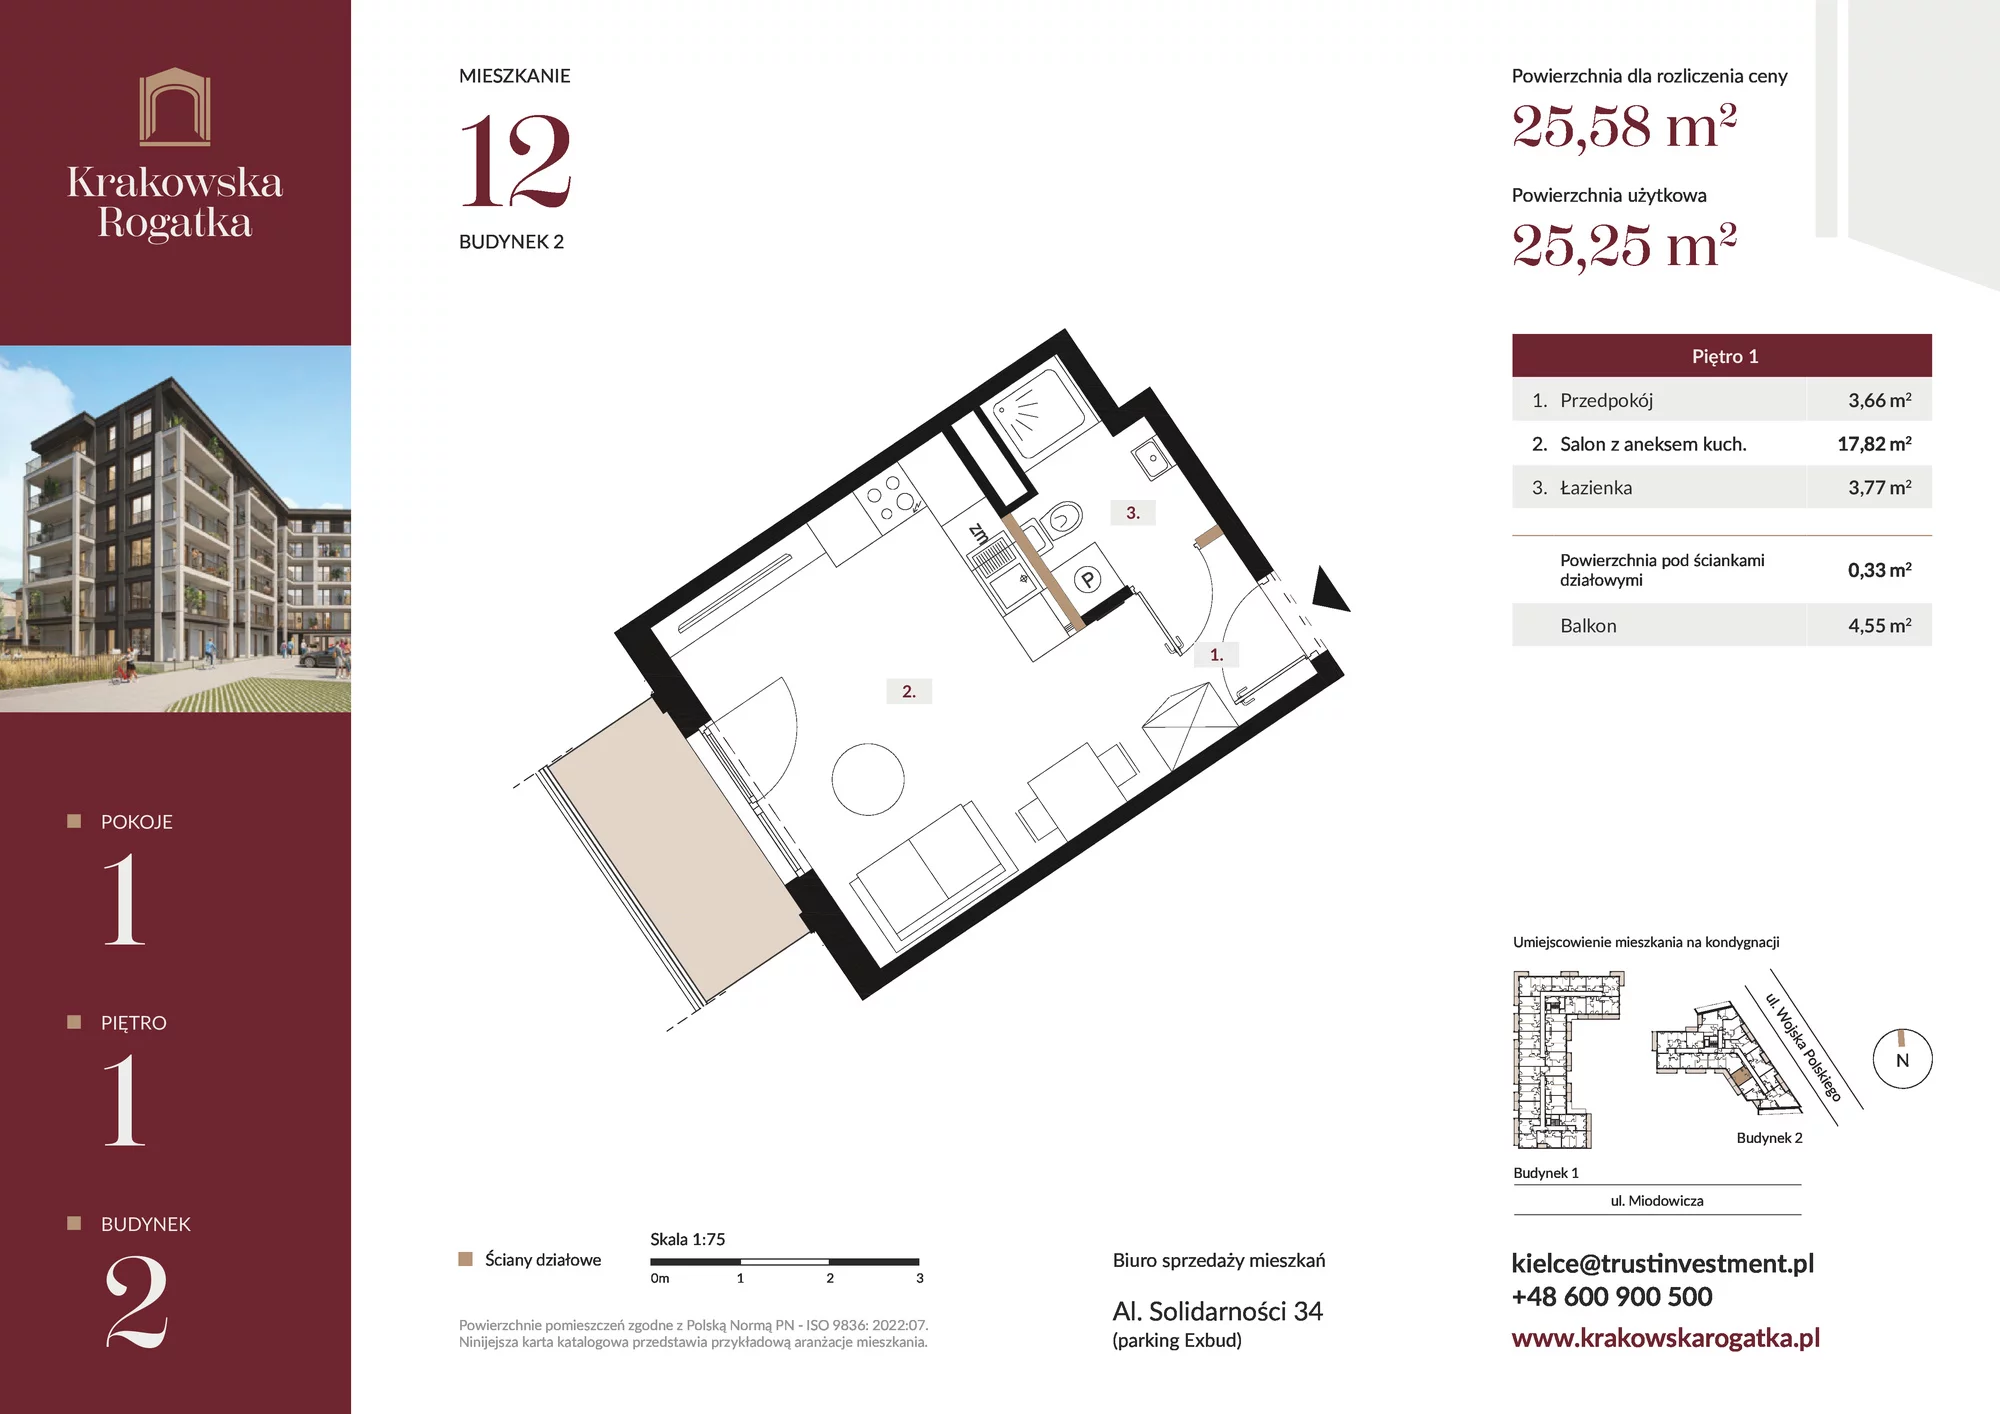 Mieszkanie 25,58 m², piętro 1, oferta nr Budynek 2 Mieszkanie 12, Krakowska Rogatka, Kielce, ul. Miodowicza 1